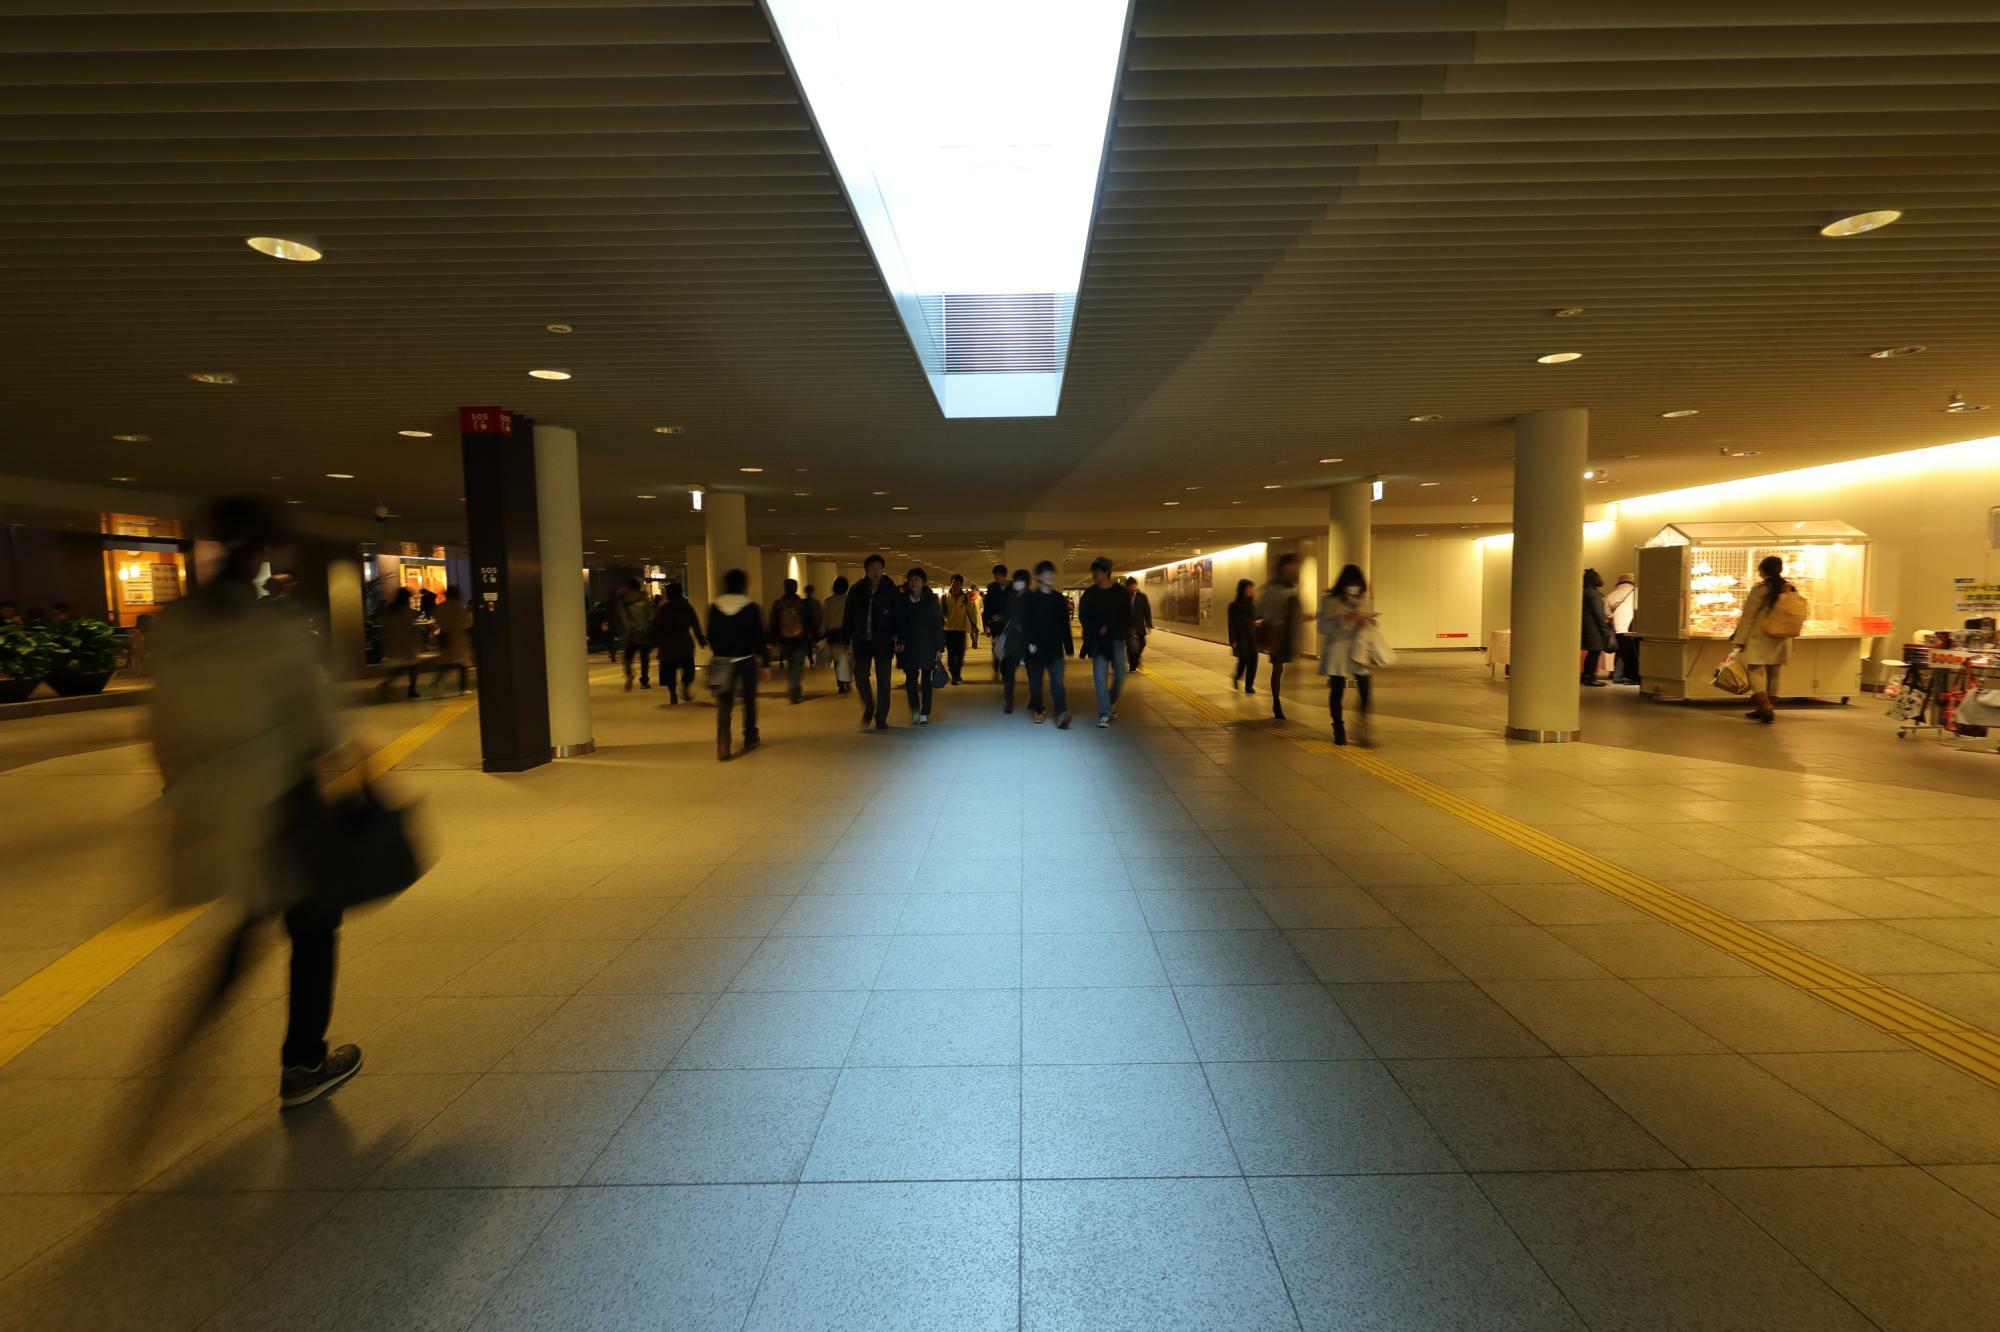 札幌では札幌駅から大通り駅周辺、狸小路、すすきのまで地下街が形成されており、冬は寒い地上を歩く人はまばらだ。